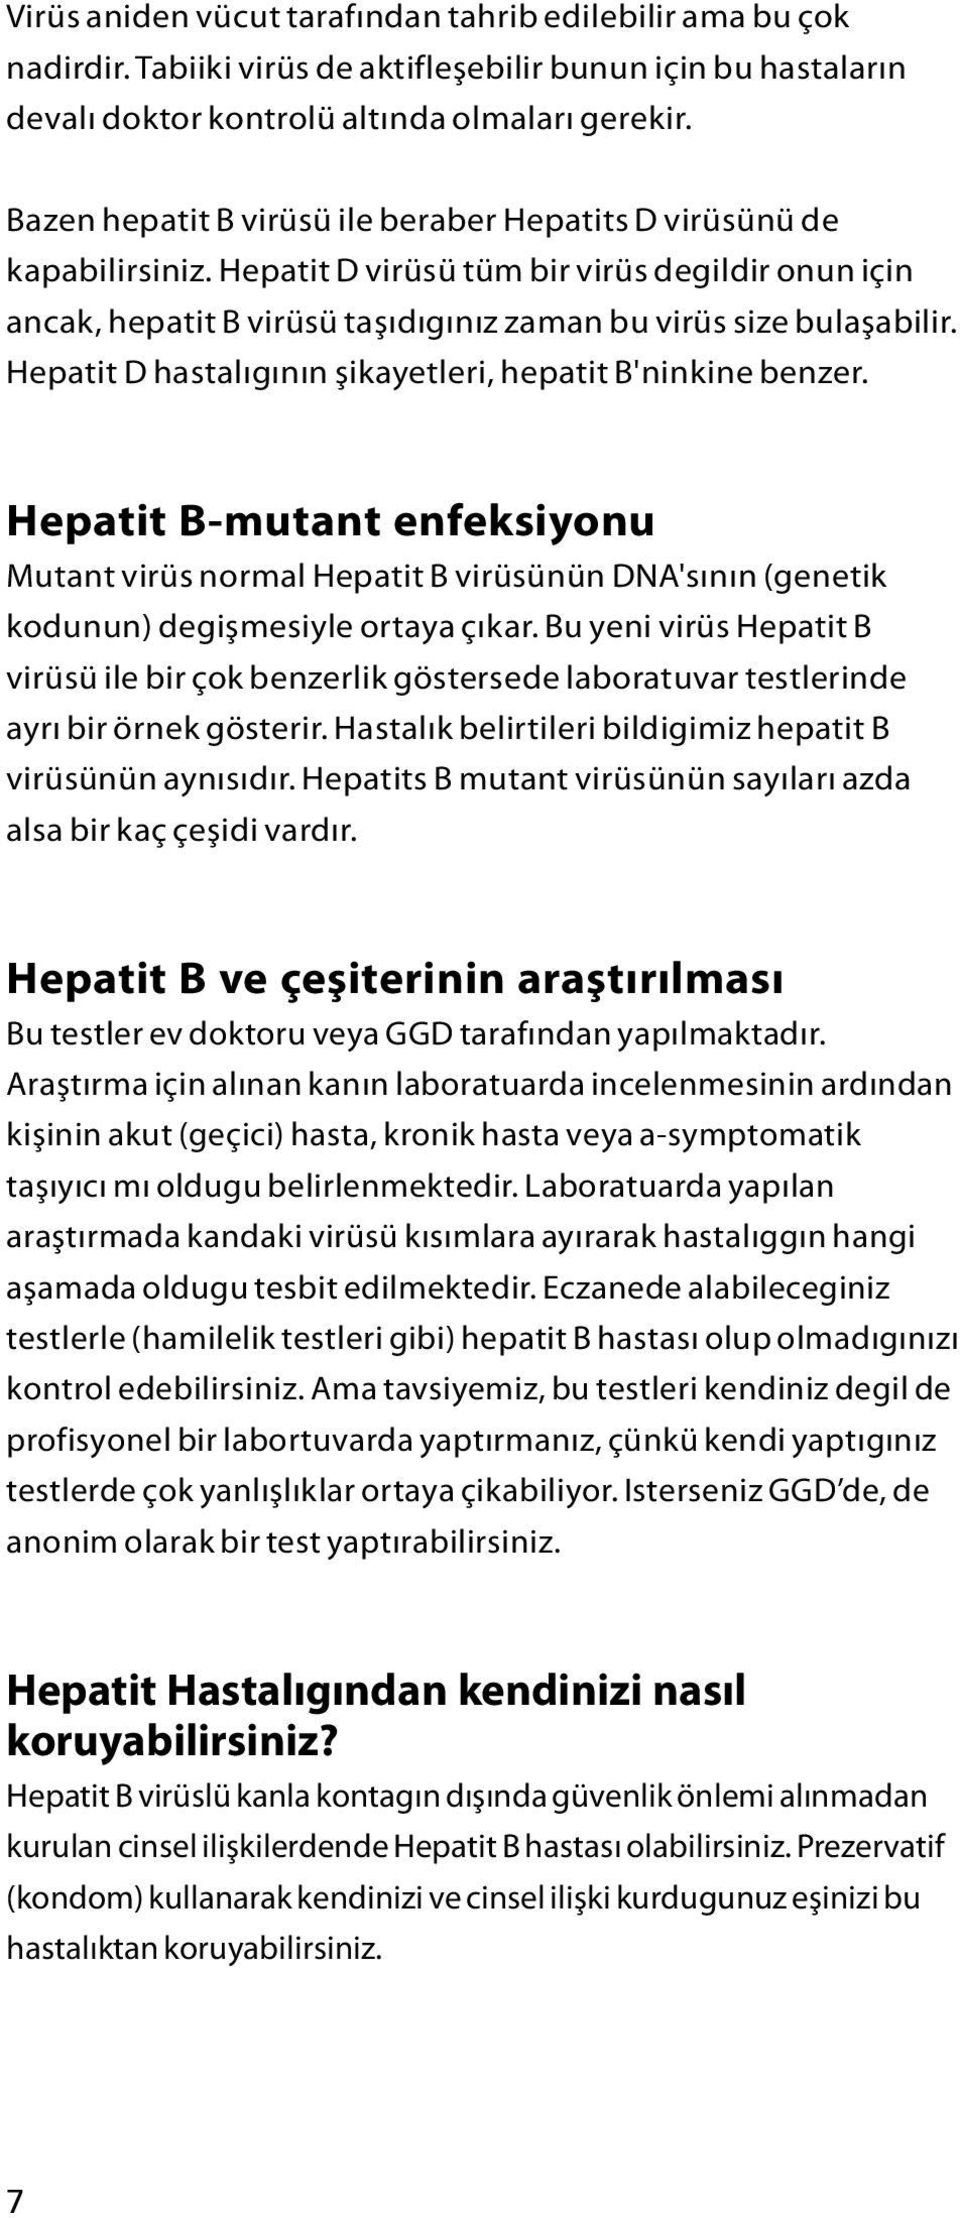 Hepatit D hastalıgının şikayetleri, hepatit B'ninkine benzer. Hepatit B-mutant enfeksiyonu Mutant virüs normal Hepatit B virüsünün DNA'sının (genetik kodunun) degişmesiyle ortaya çıkar.